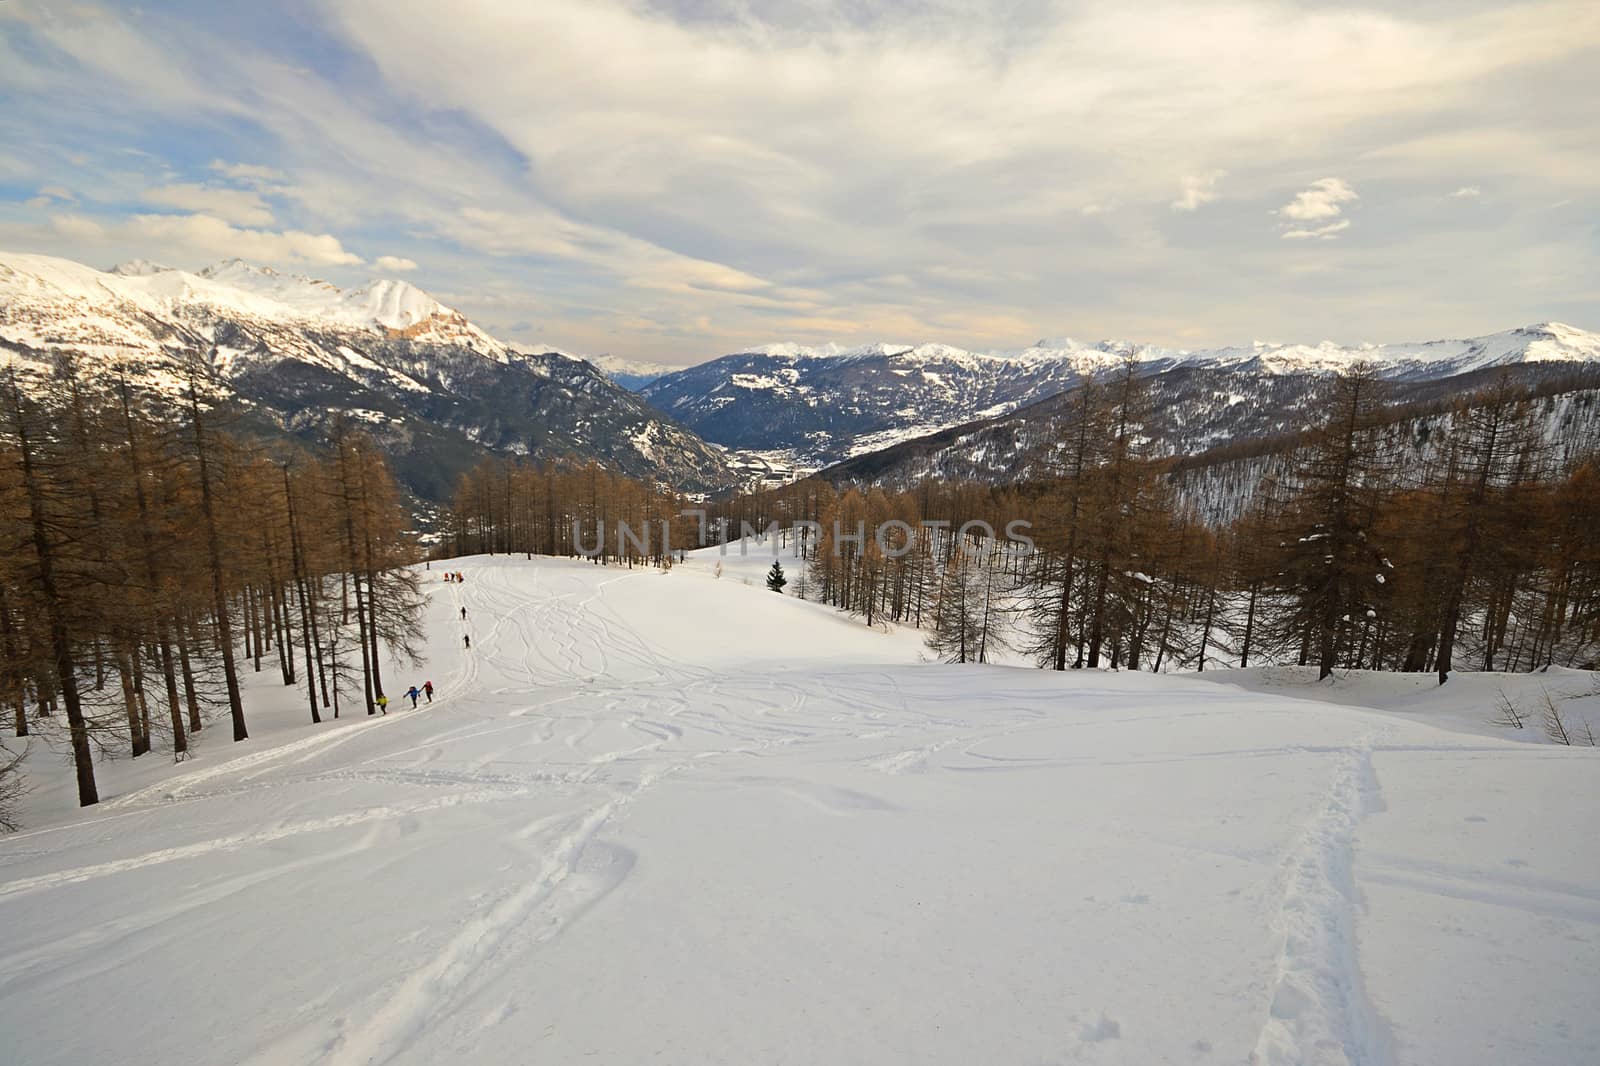 Ski slope in scenic valley by fbxx